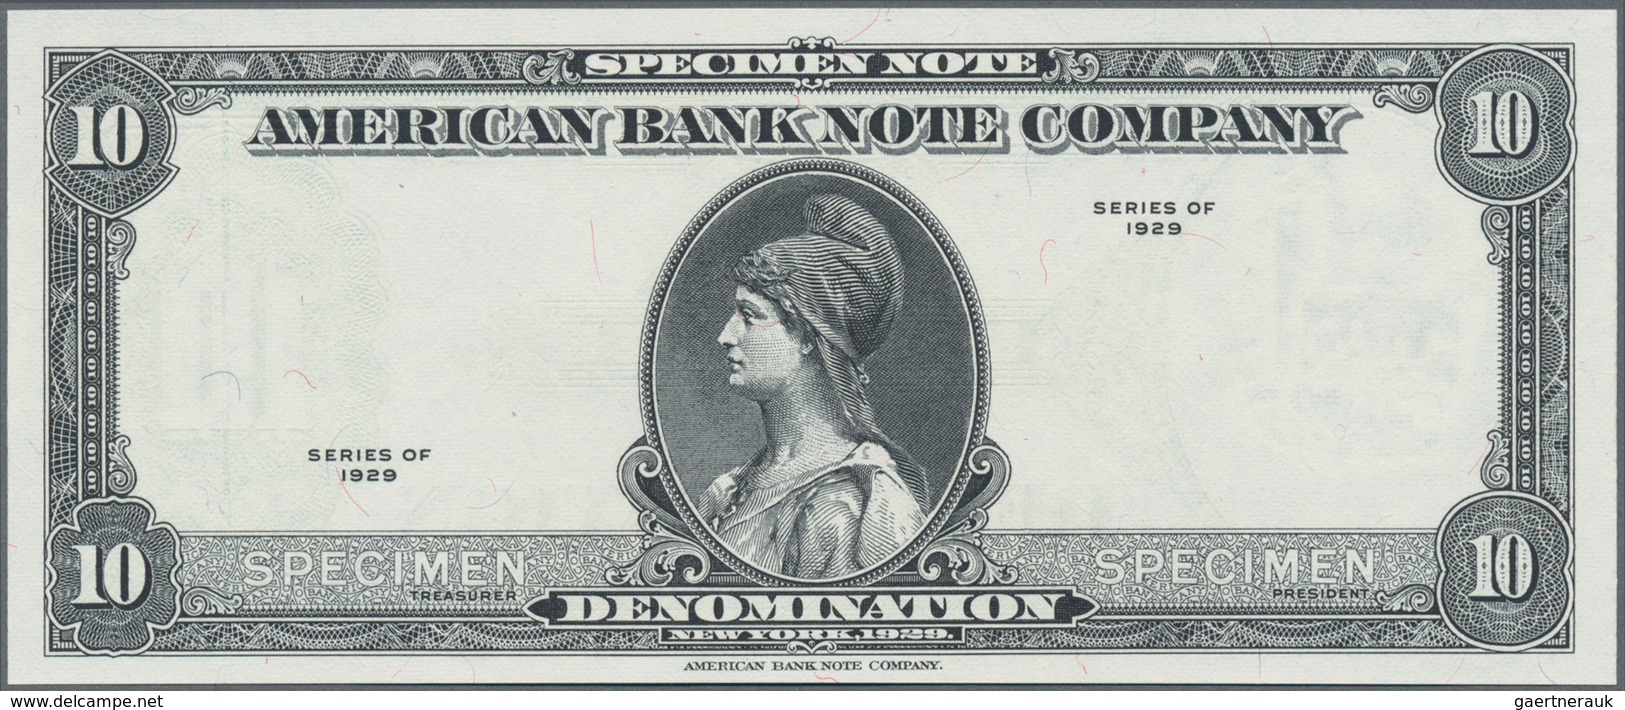 Testbanknoten:  American Banknote Company 10 Dollars 1929 SPECIMEN Intaglio Printed Test Note In UNC - Ficción & Especímenes